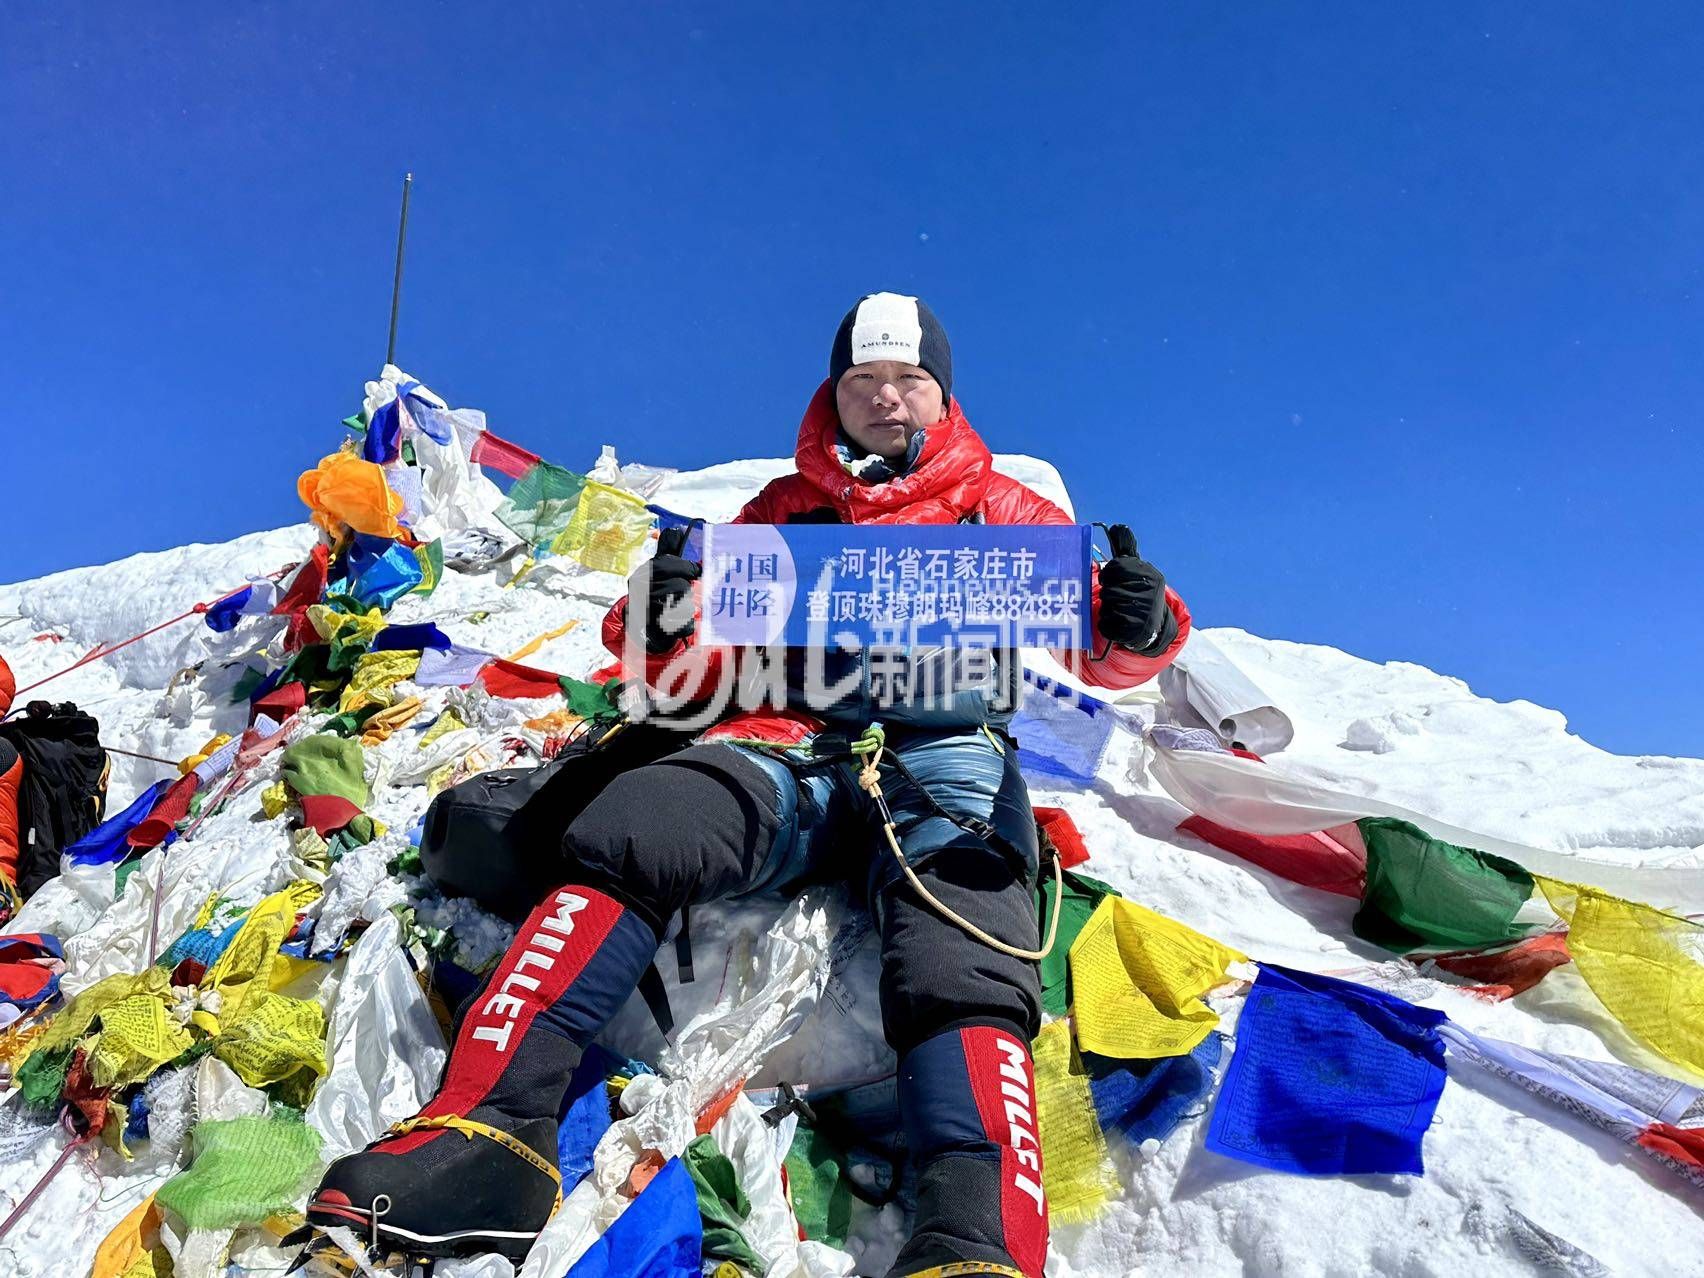 石家庄90后退伍军人成功登顶珠穆朗玛峰，市长专门会见并献花祝贺